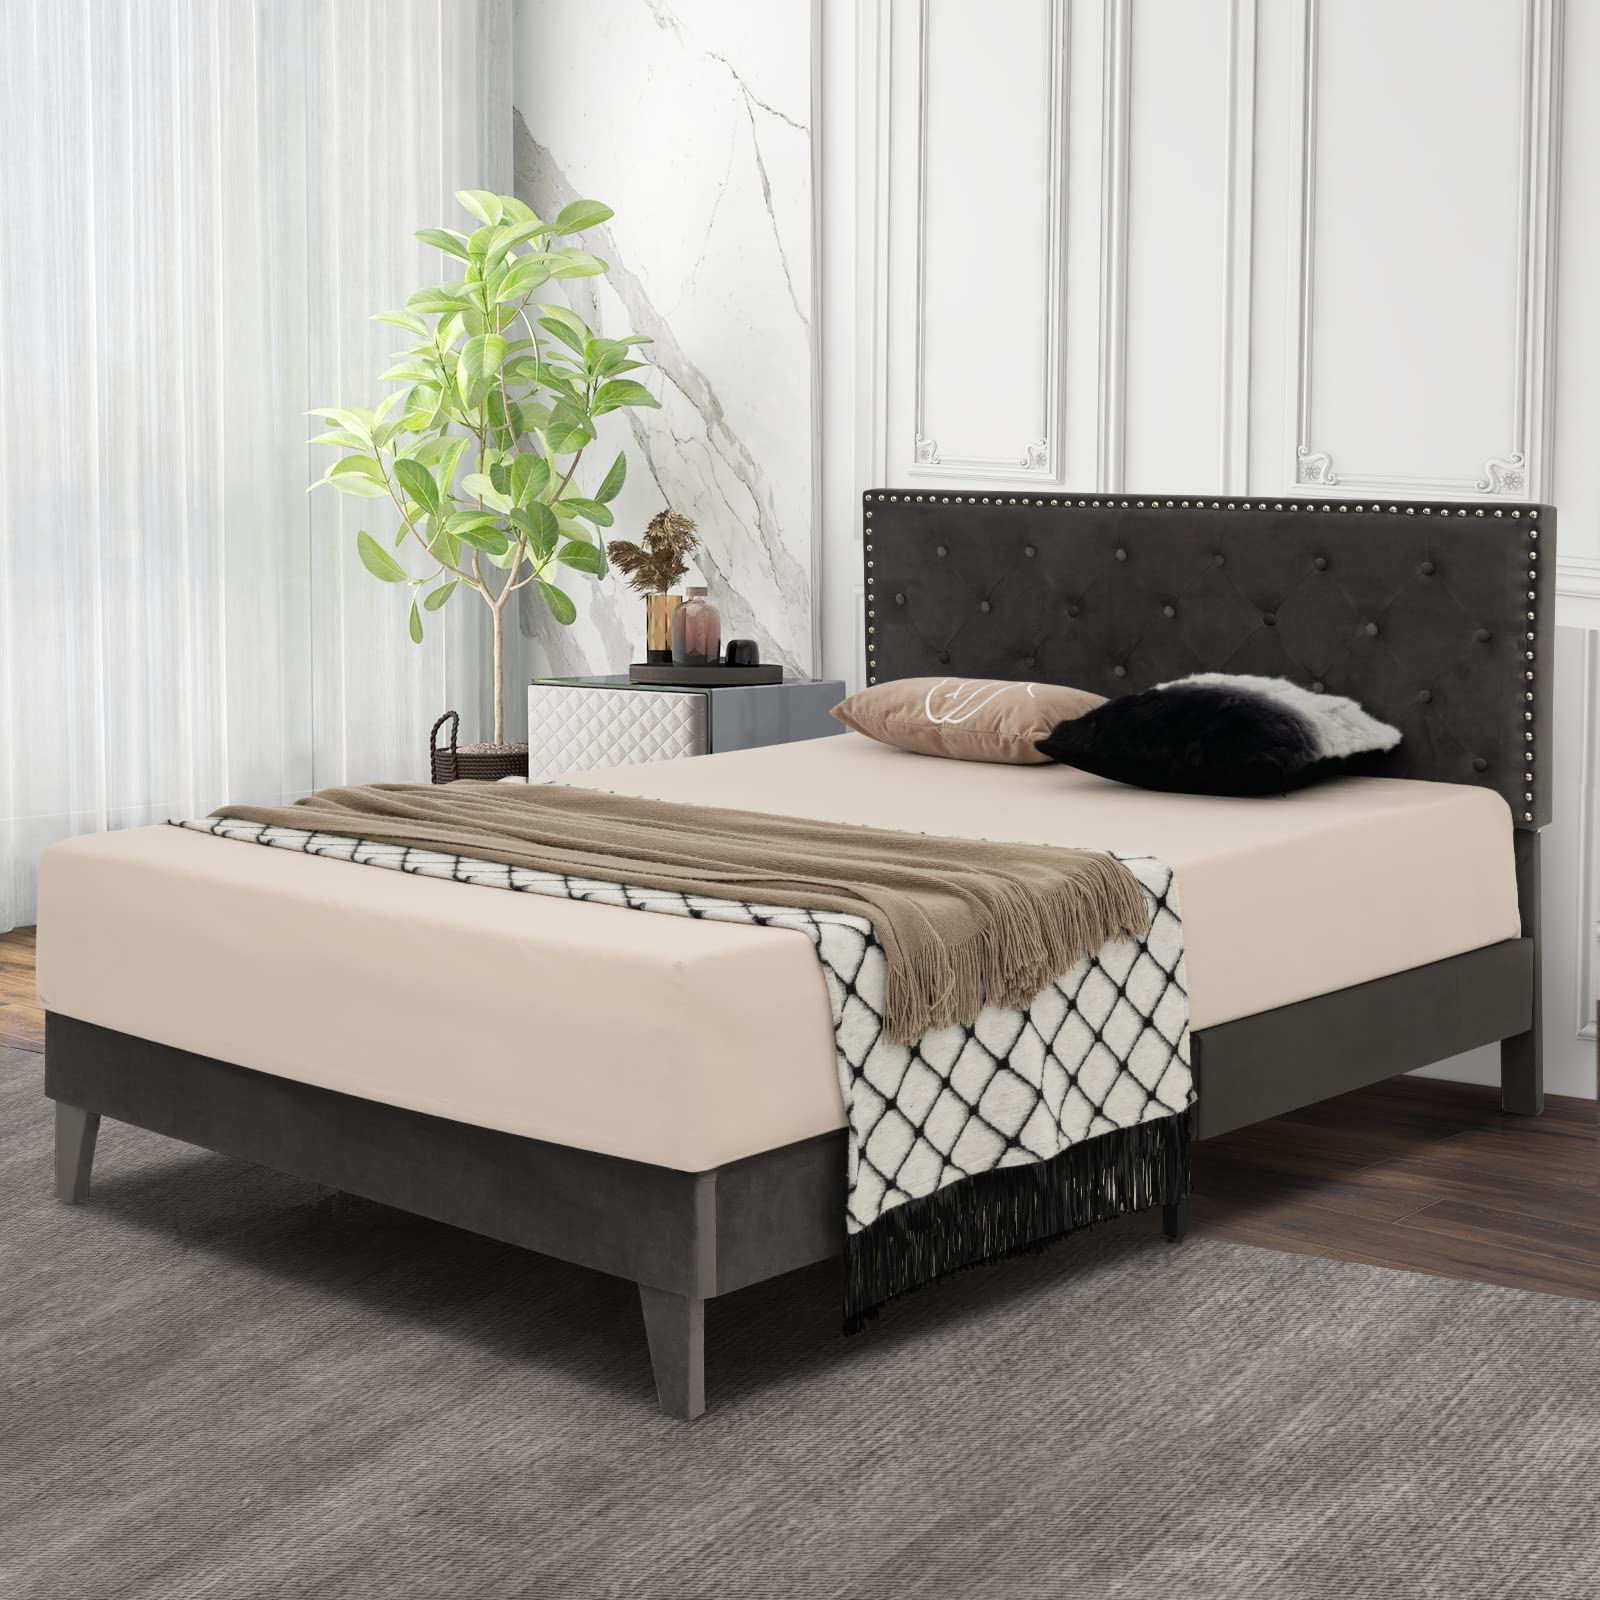 Giantex Upholstered Full Size Bed Frame